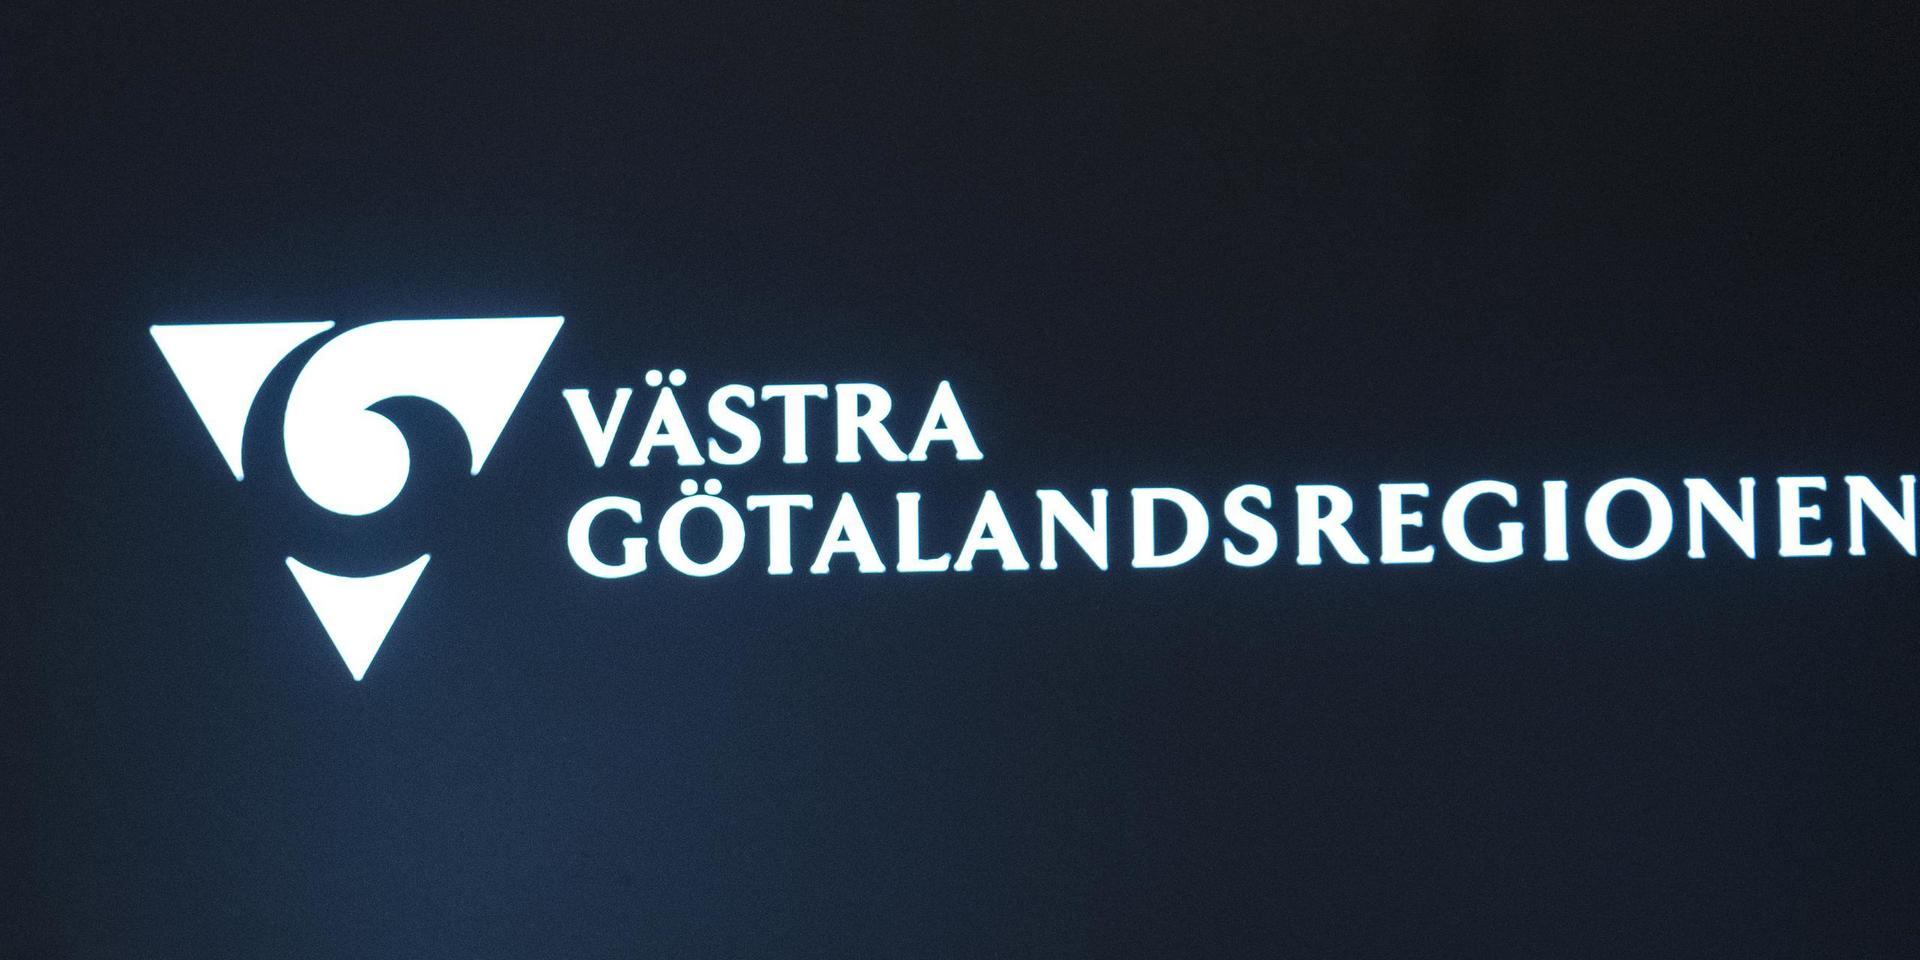 Västra Götalandsregionen behåller sitt namn. Arkivbild.